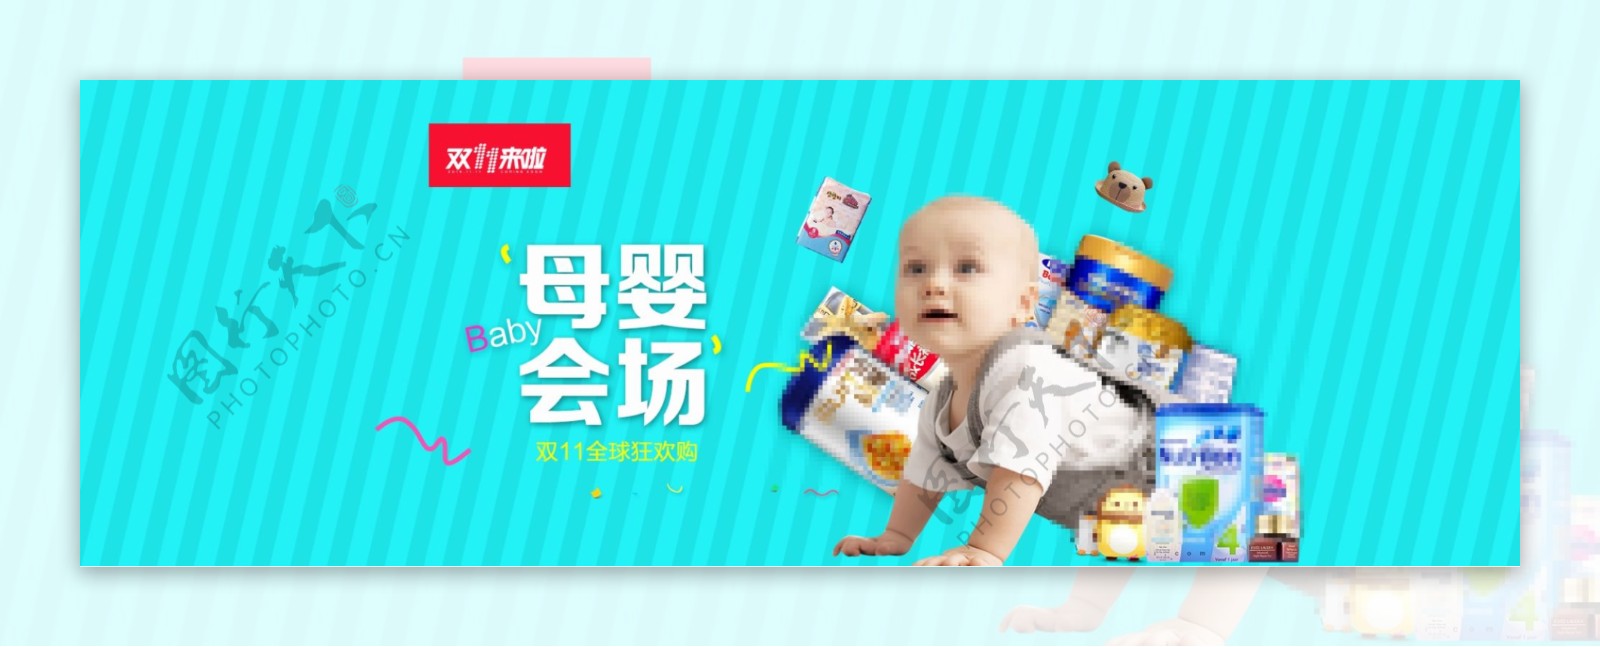 温馨母婴风格婴儿用品海报模板